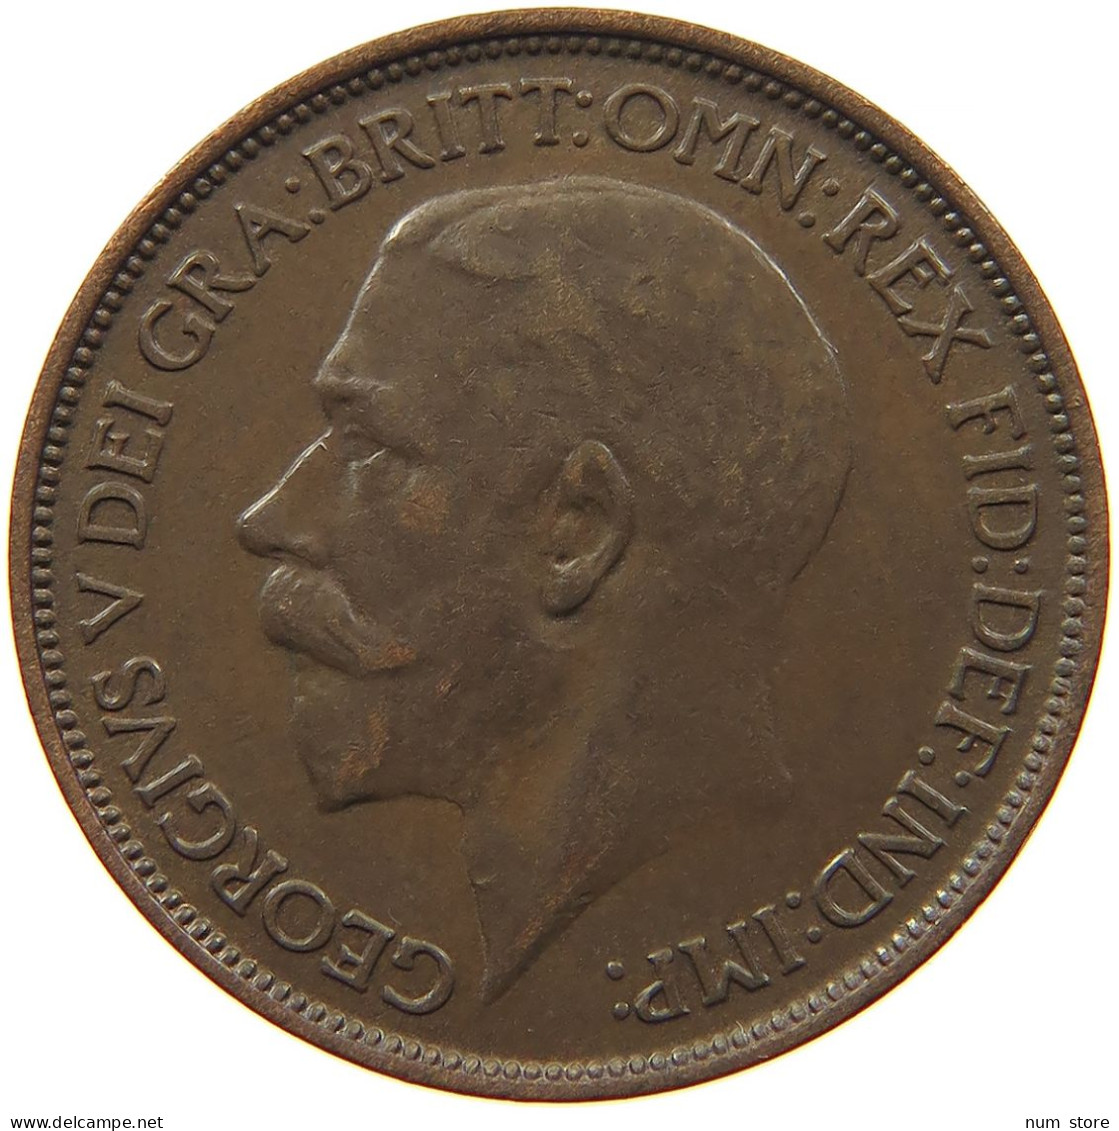 GREAT BRITAIN HALF PENNY 1914 #s095 0331 - C. 1/2 Penny